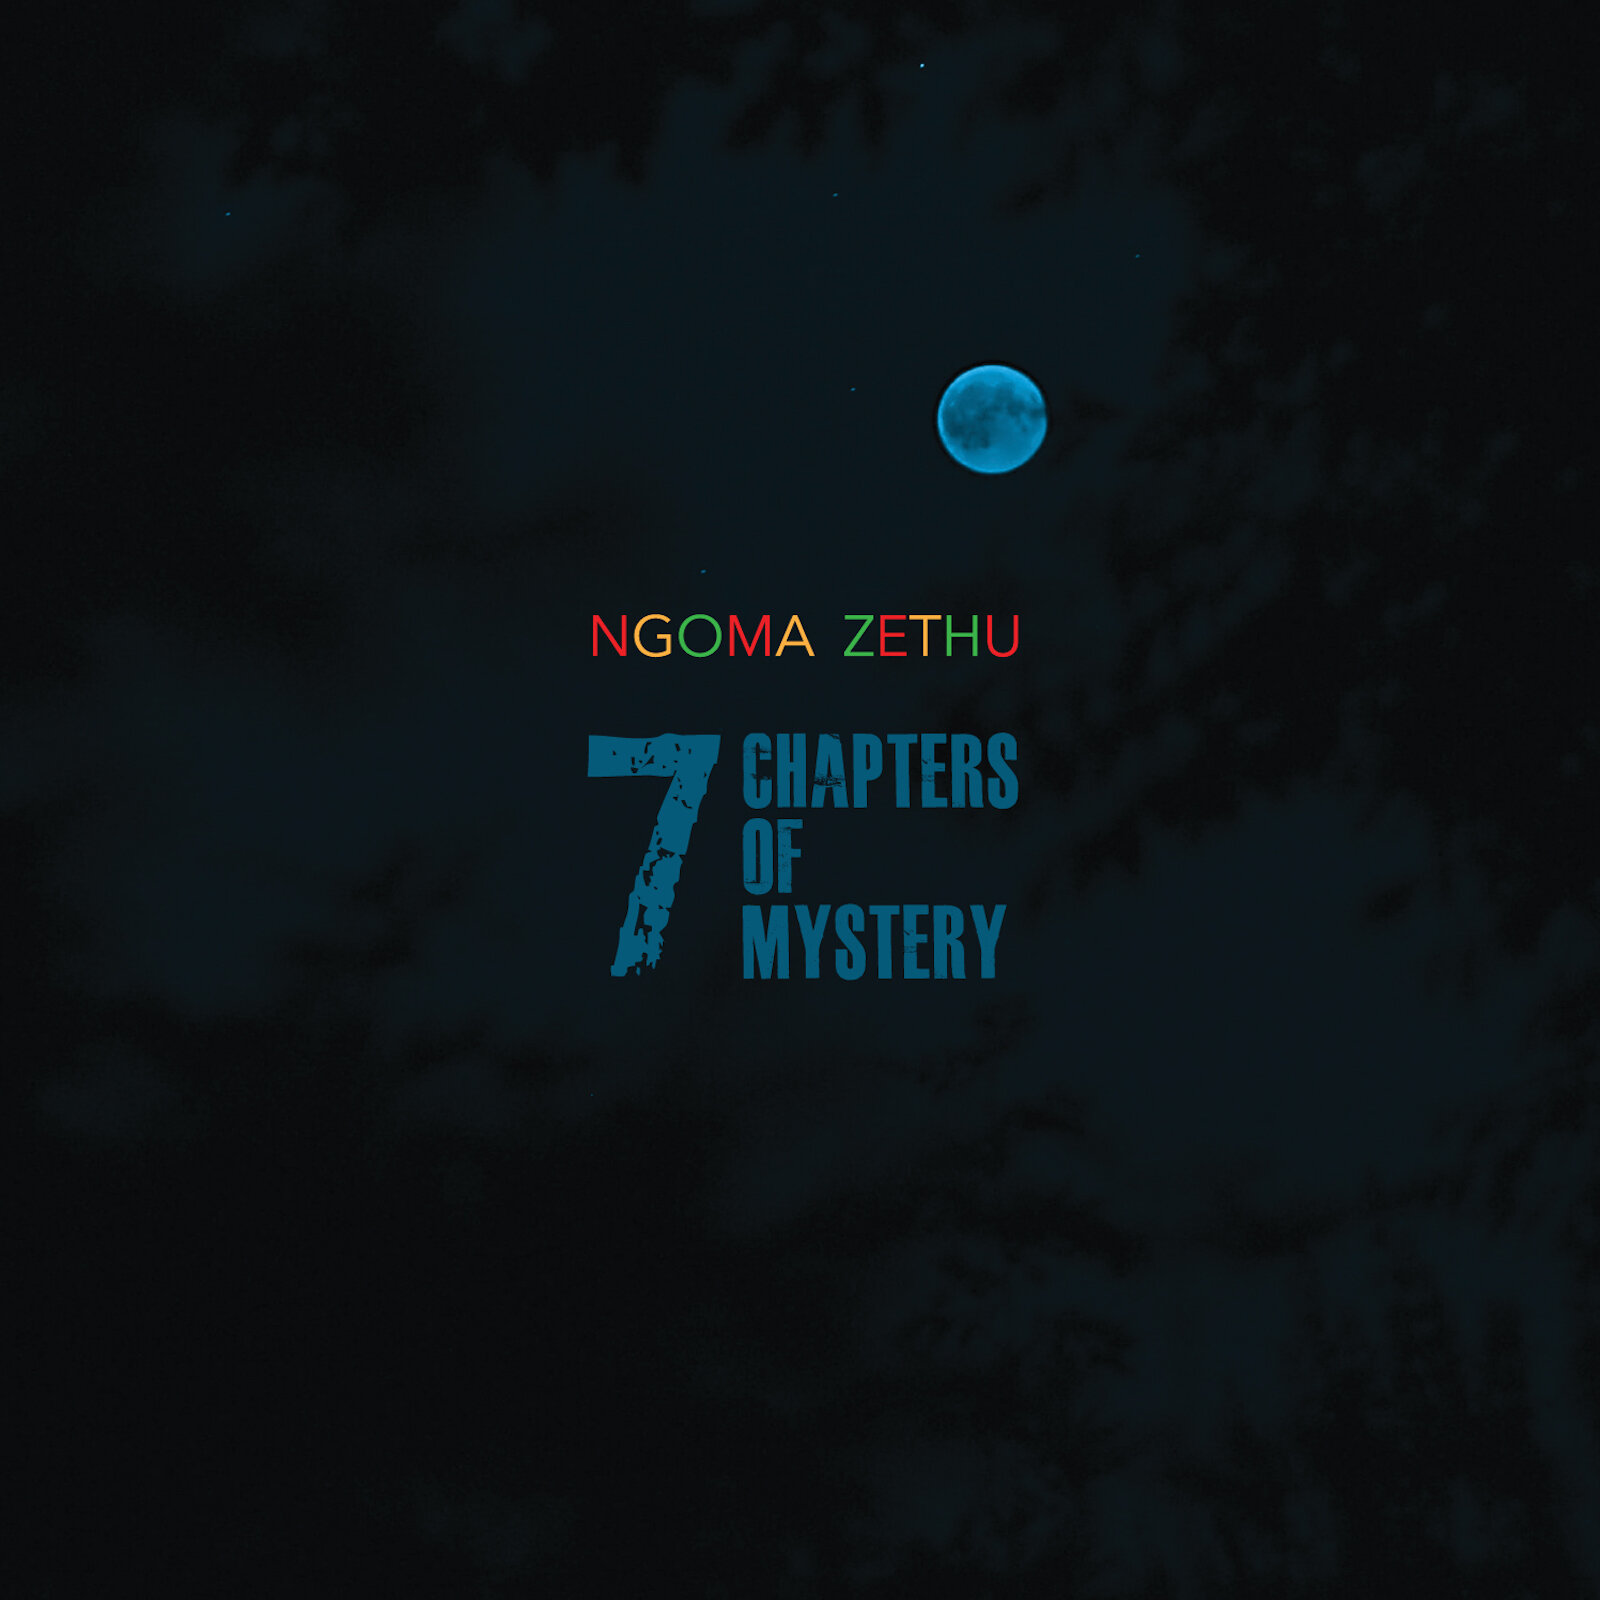 NGOMA ZETHU - 7 Chapters of Mystery